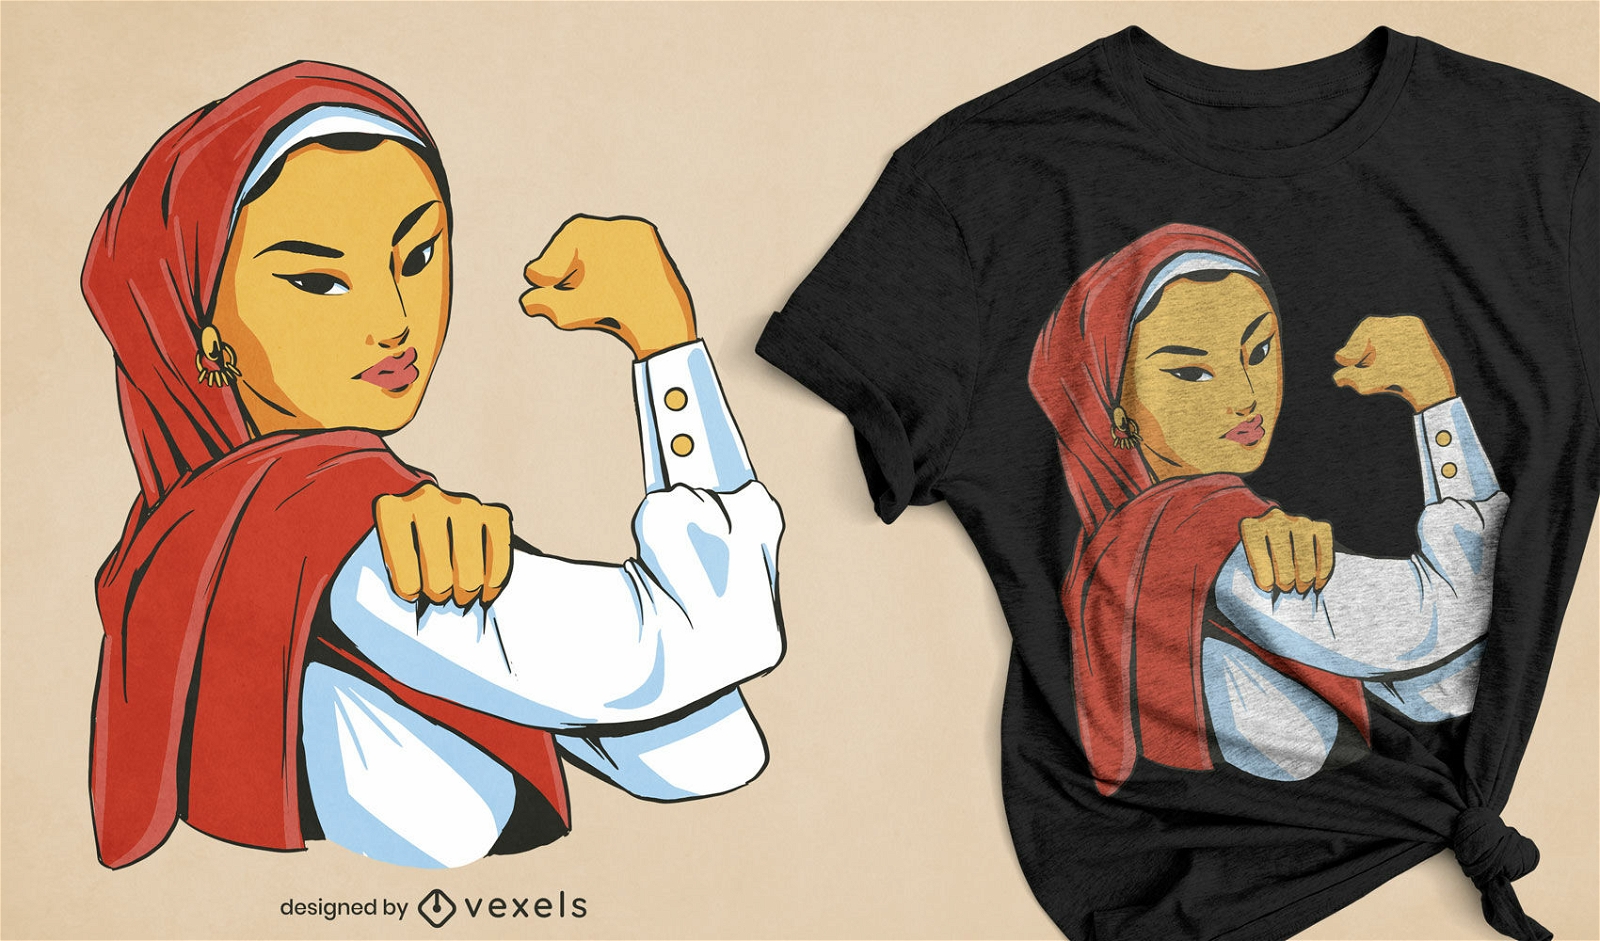 Starkes feministisches T-Shirt-Design f?r muslimische Frauen